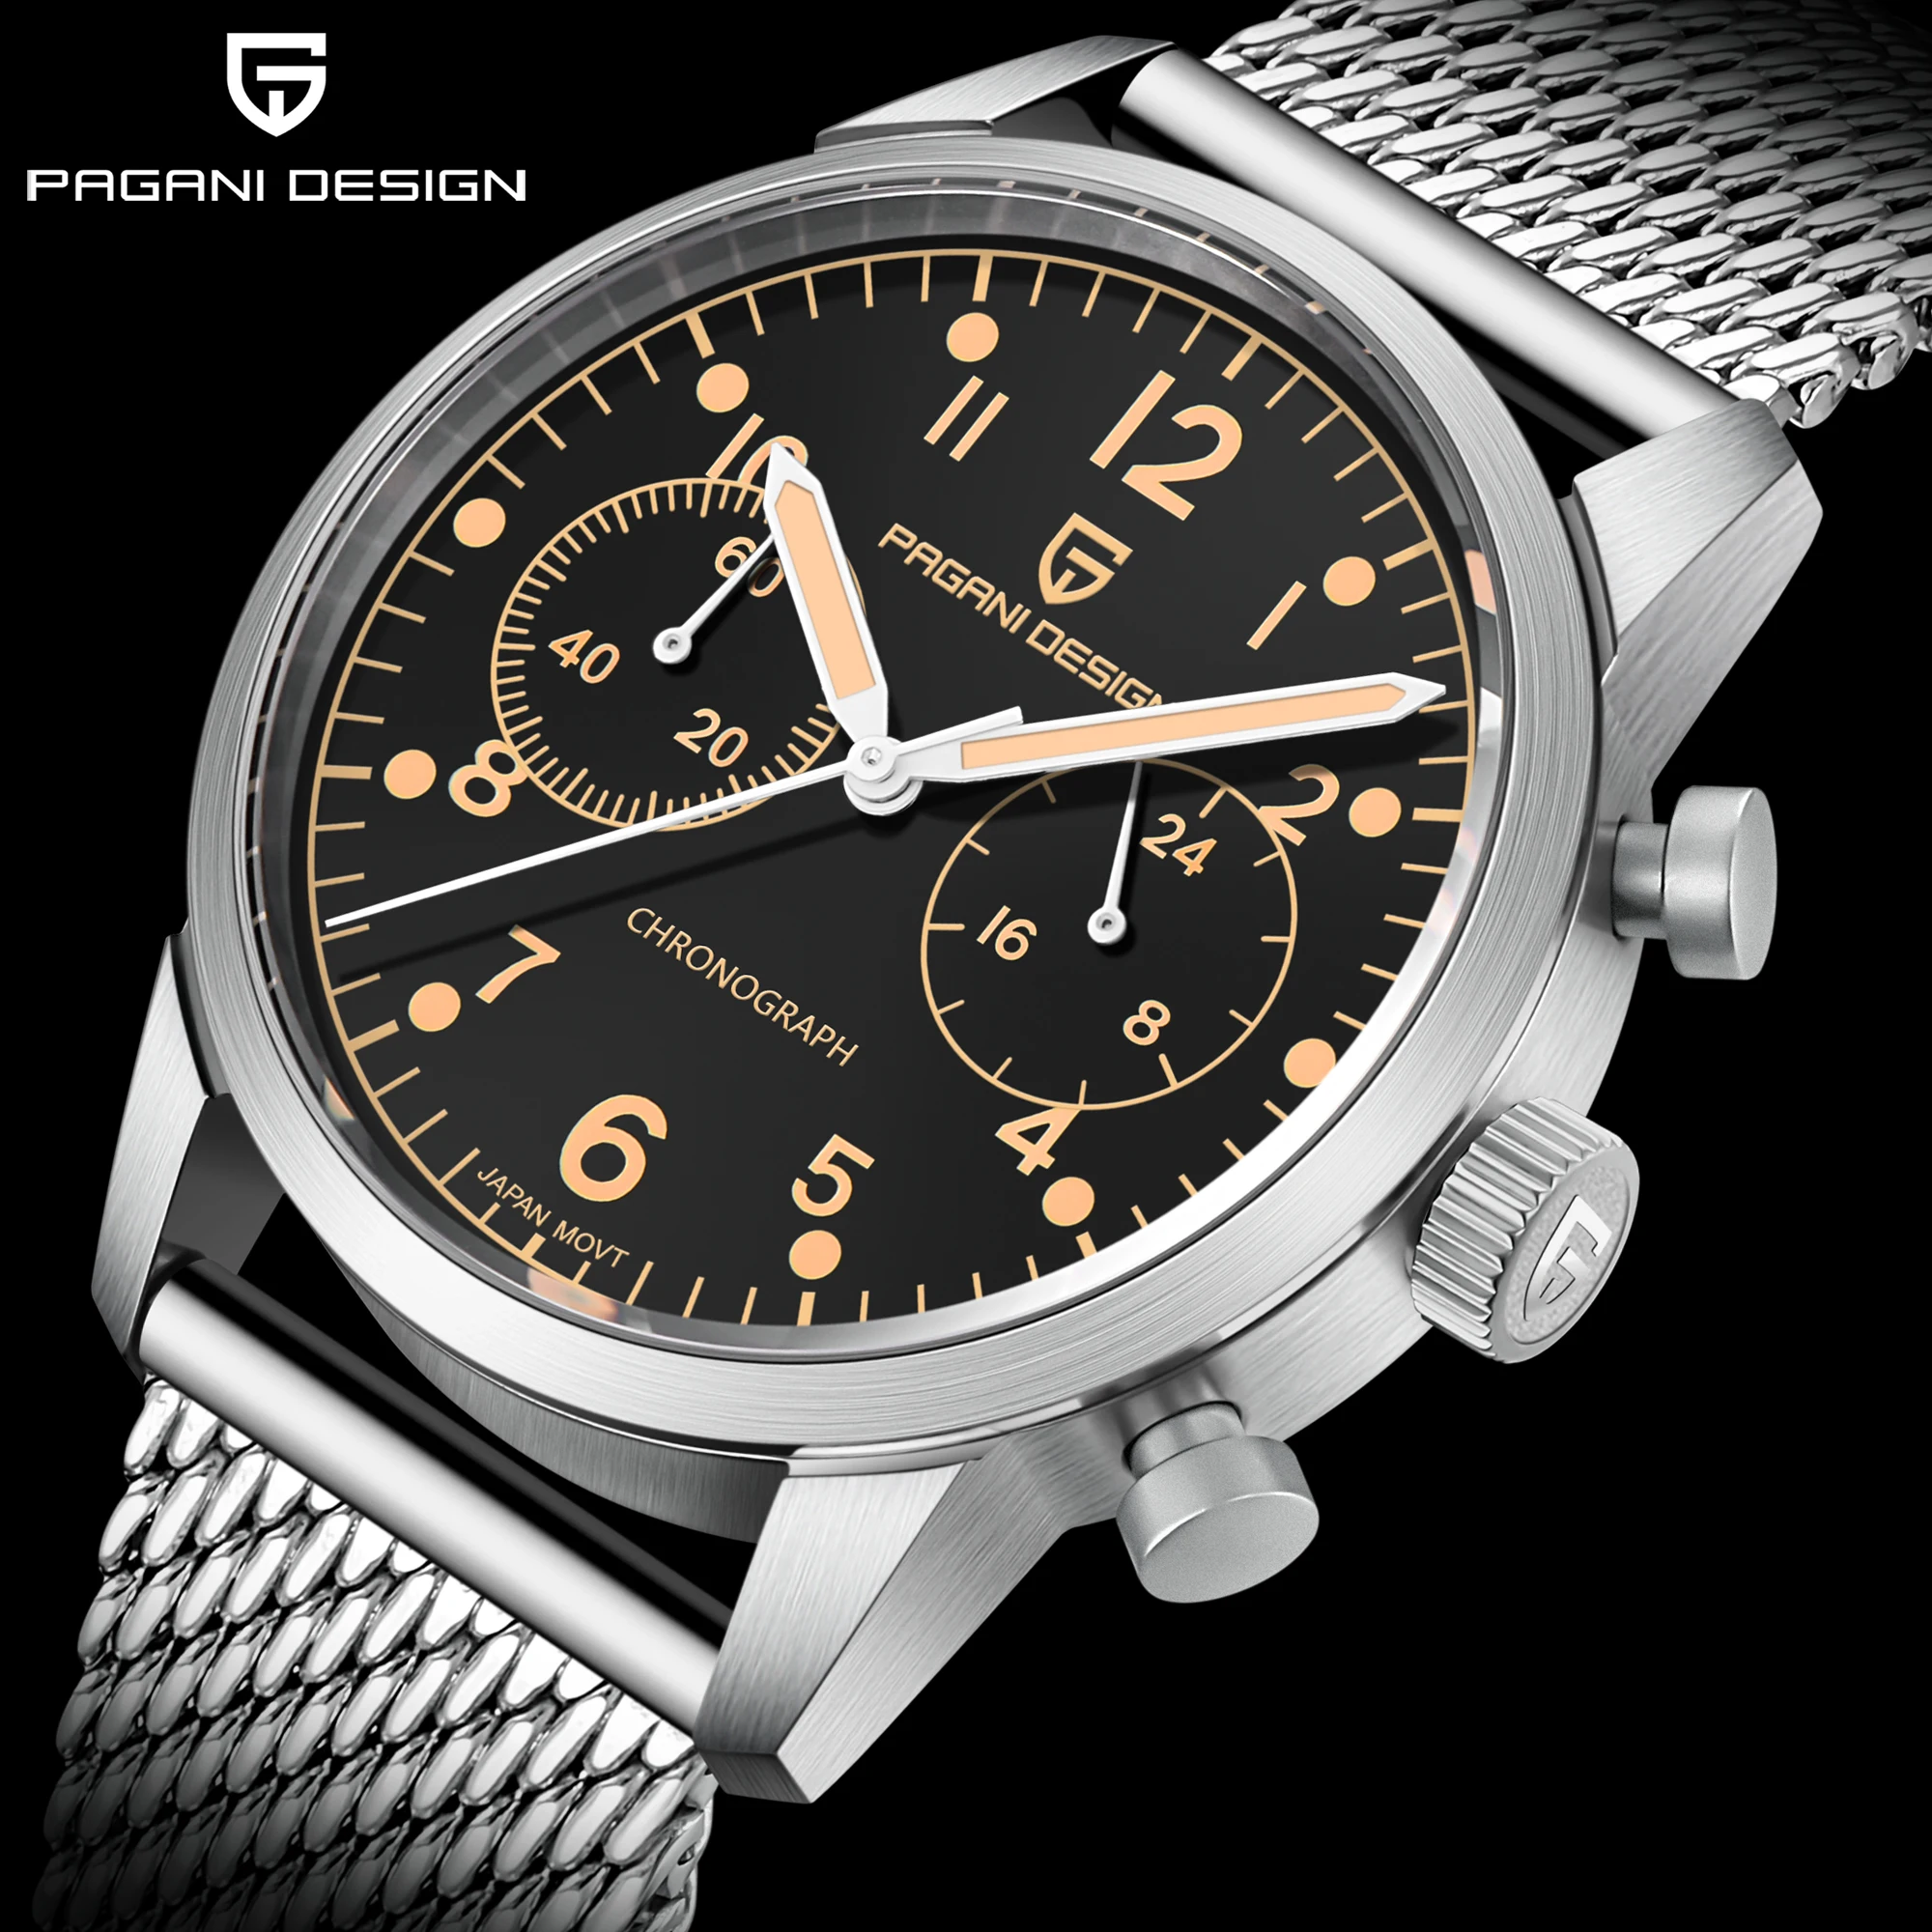 

PAGANI DESIGN PD1708 Men's Quartz Watch VK64 Movement Sapphire Glass 100M Stainless Steel Waterproof Wristwatch часы мужские нар